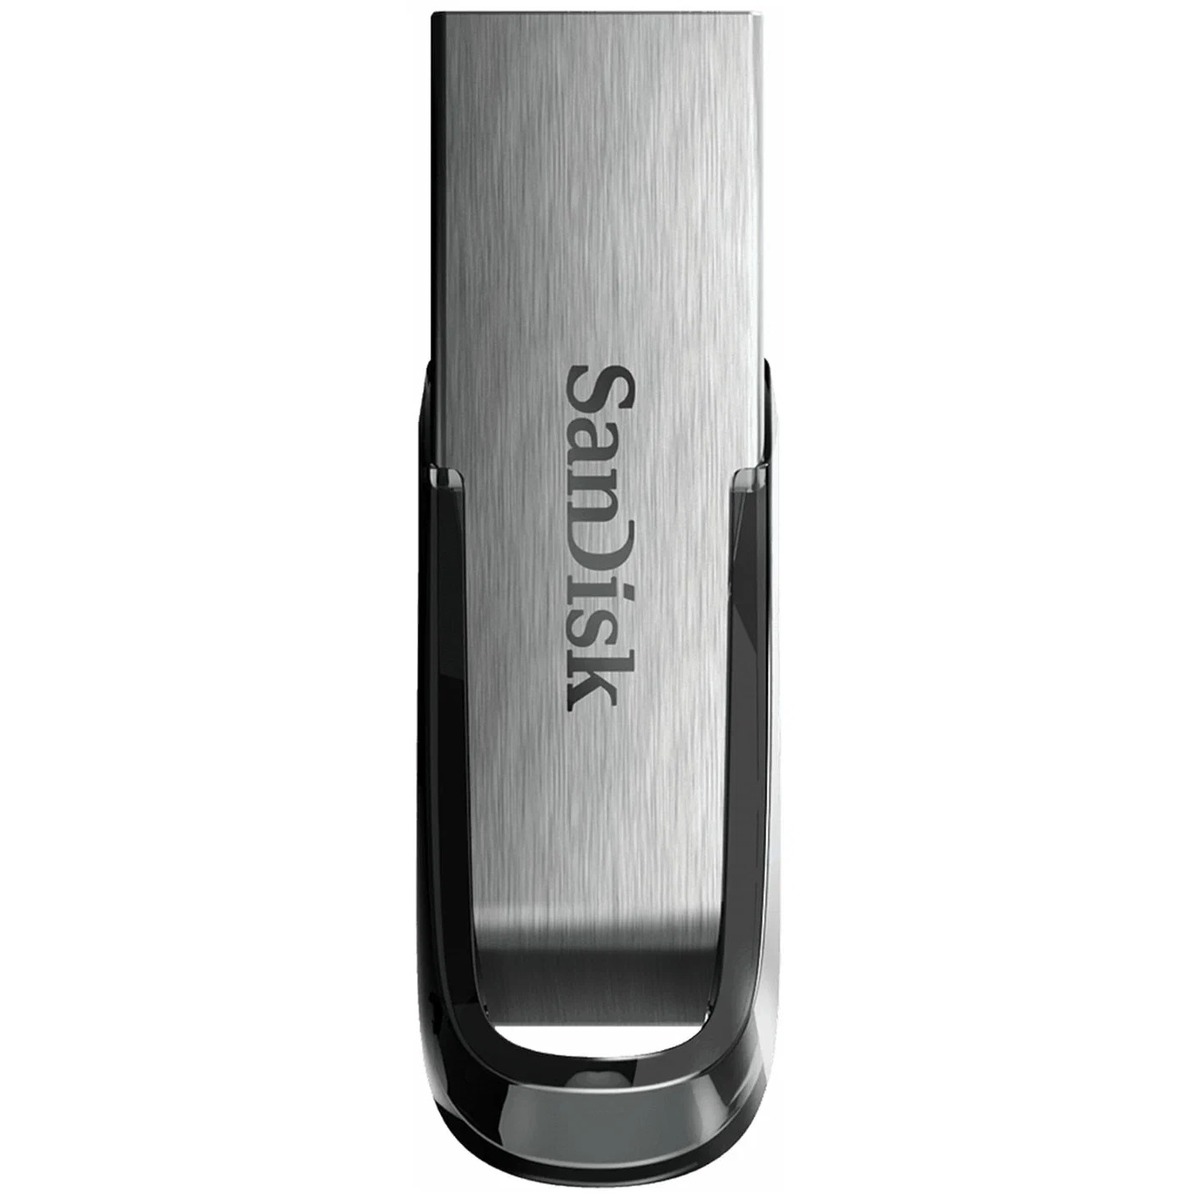 Флэш-накопитель SANDISK 256GB SDCZ73-256G-G46 (Цвет: Silver)